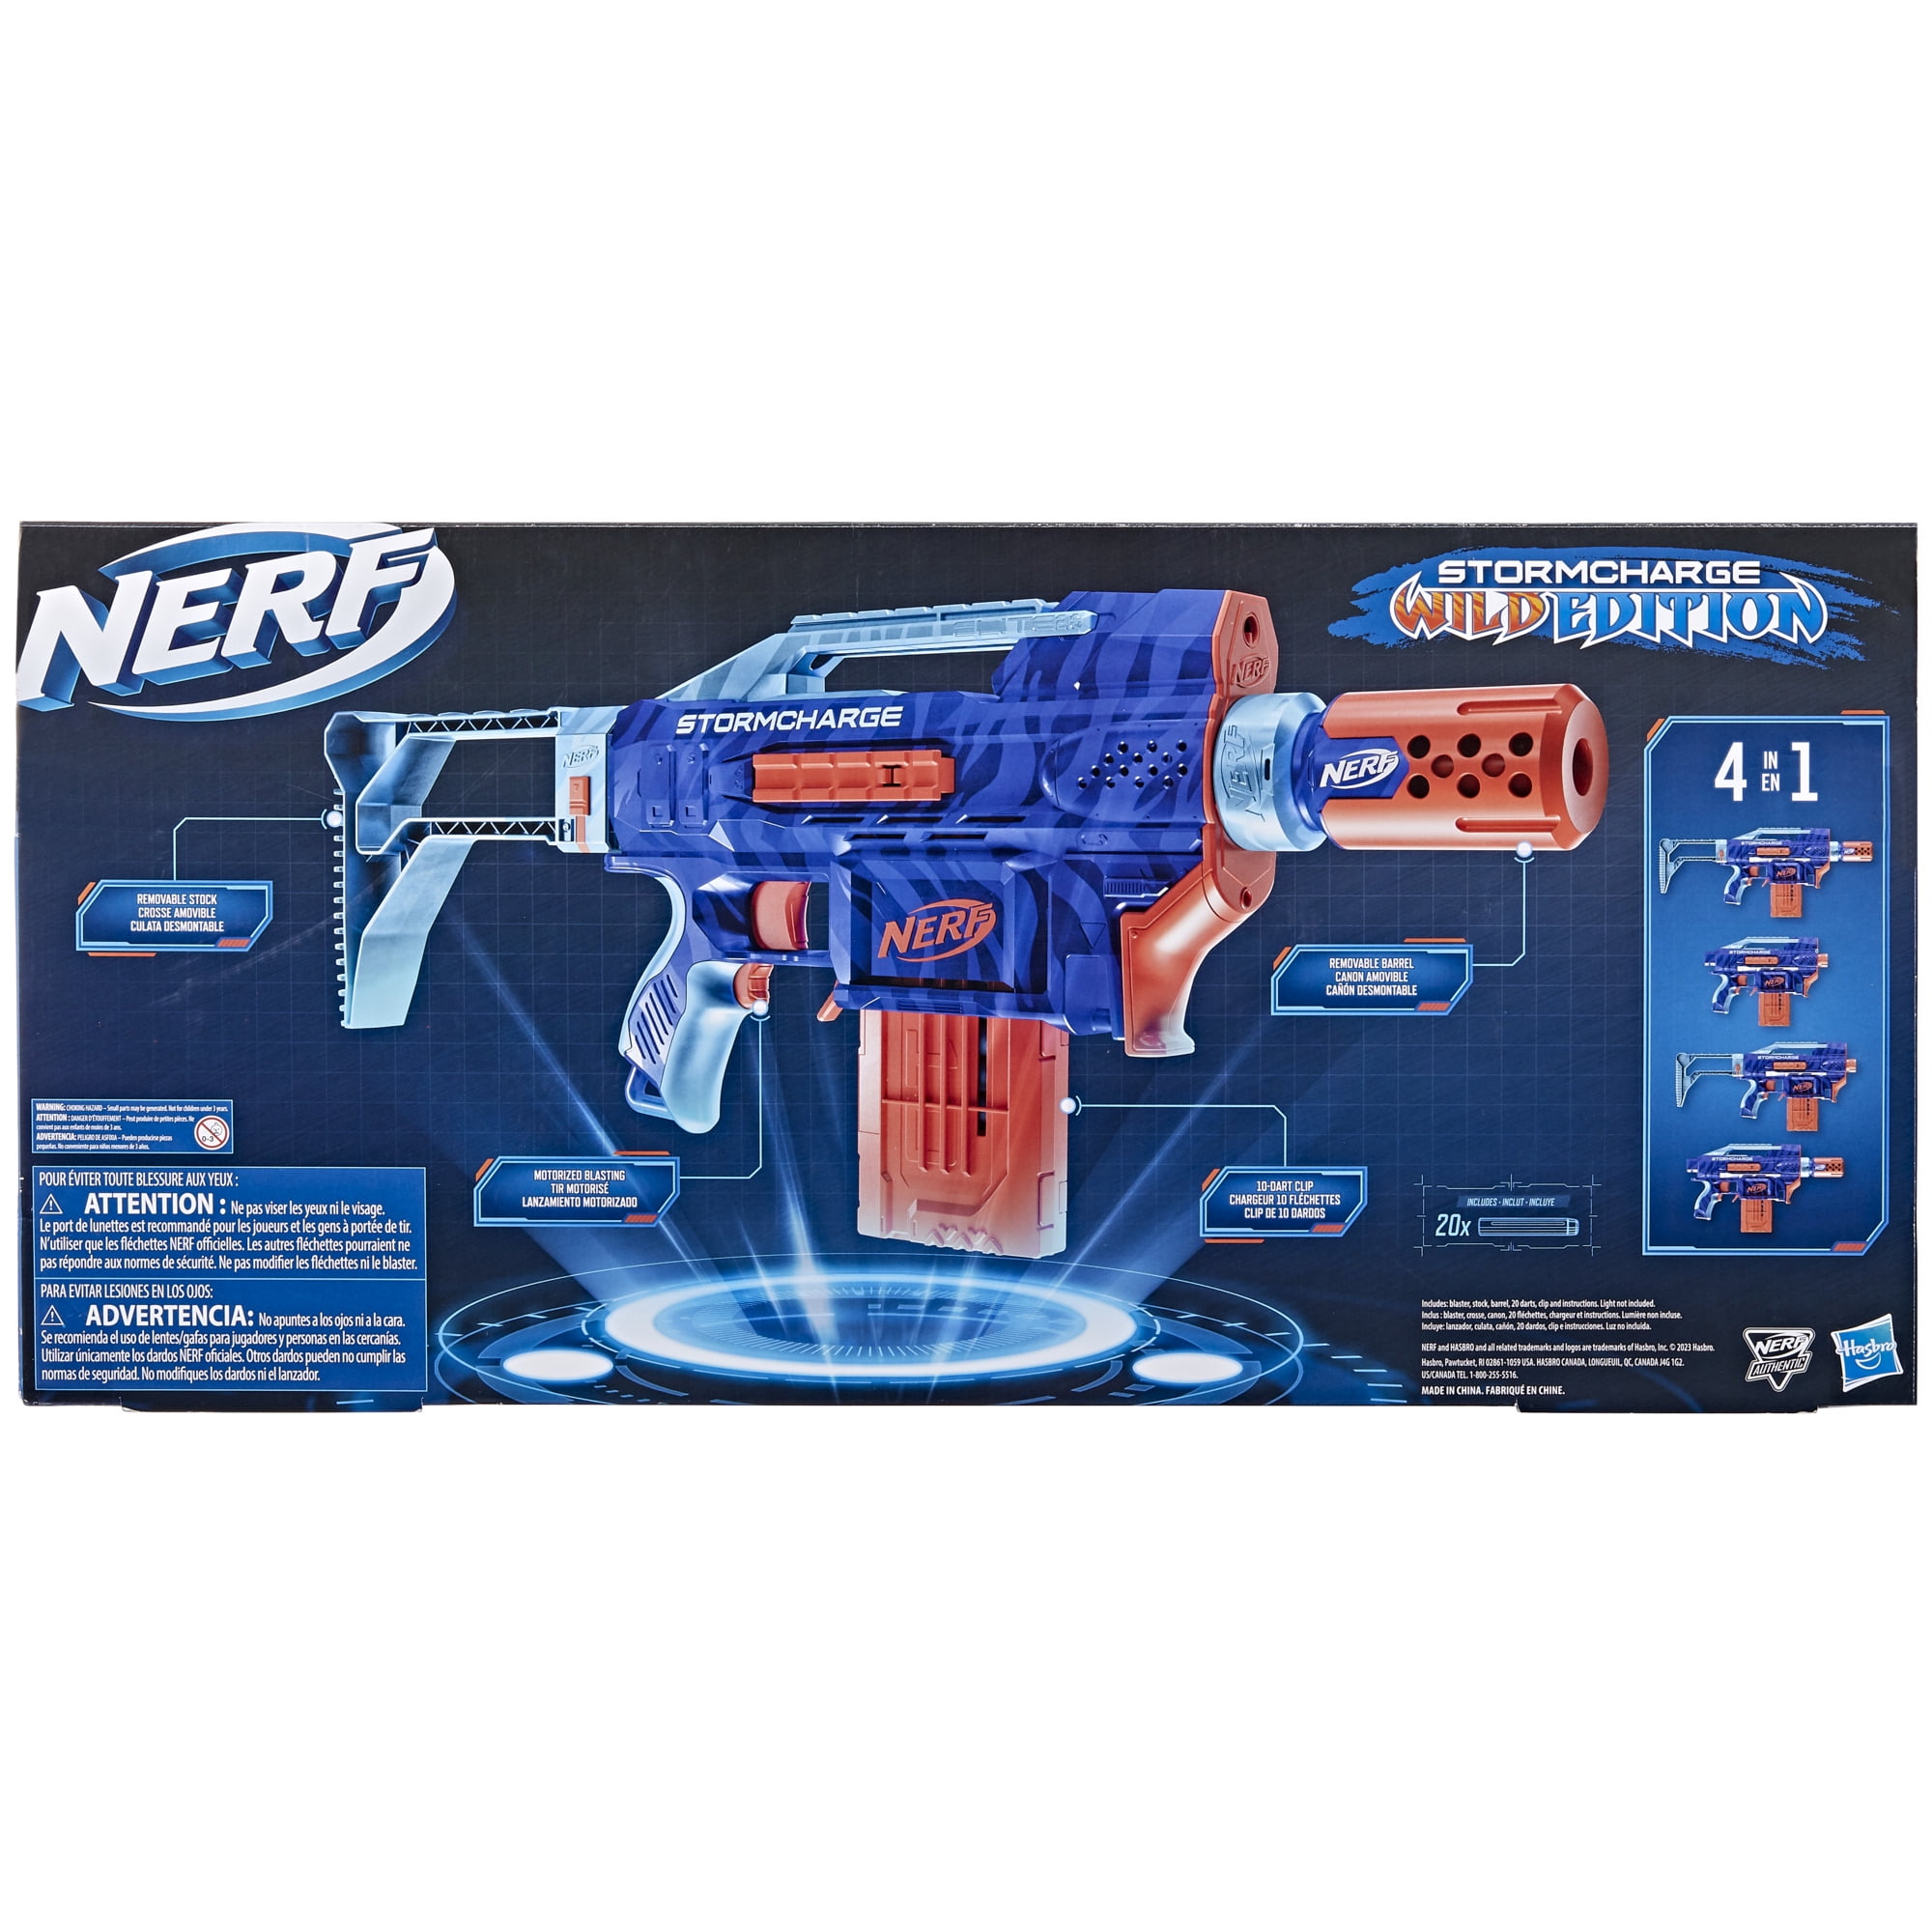 Toy weapon NERF Elite 2.0 Turbine Elite E9481 Blaster weapons Nerf nerf  toys Hobbies Outdoor Fun Sports for kids development Gun - AliExpress